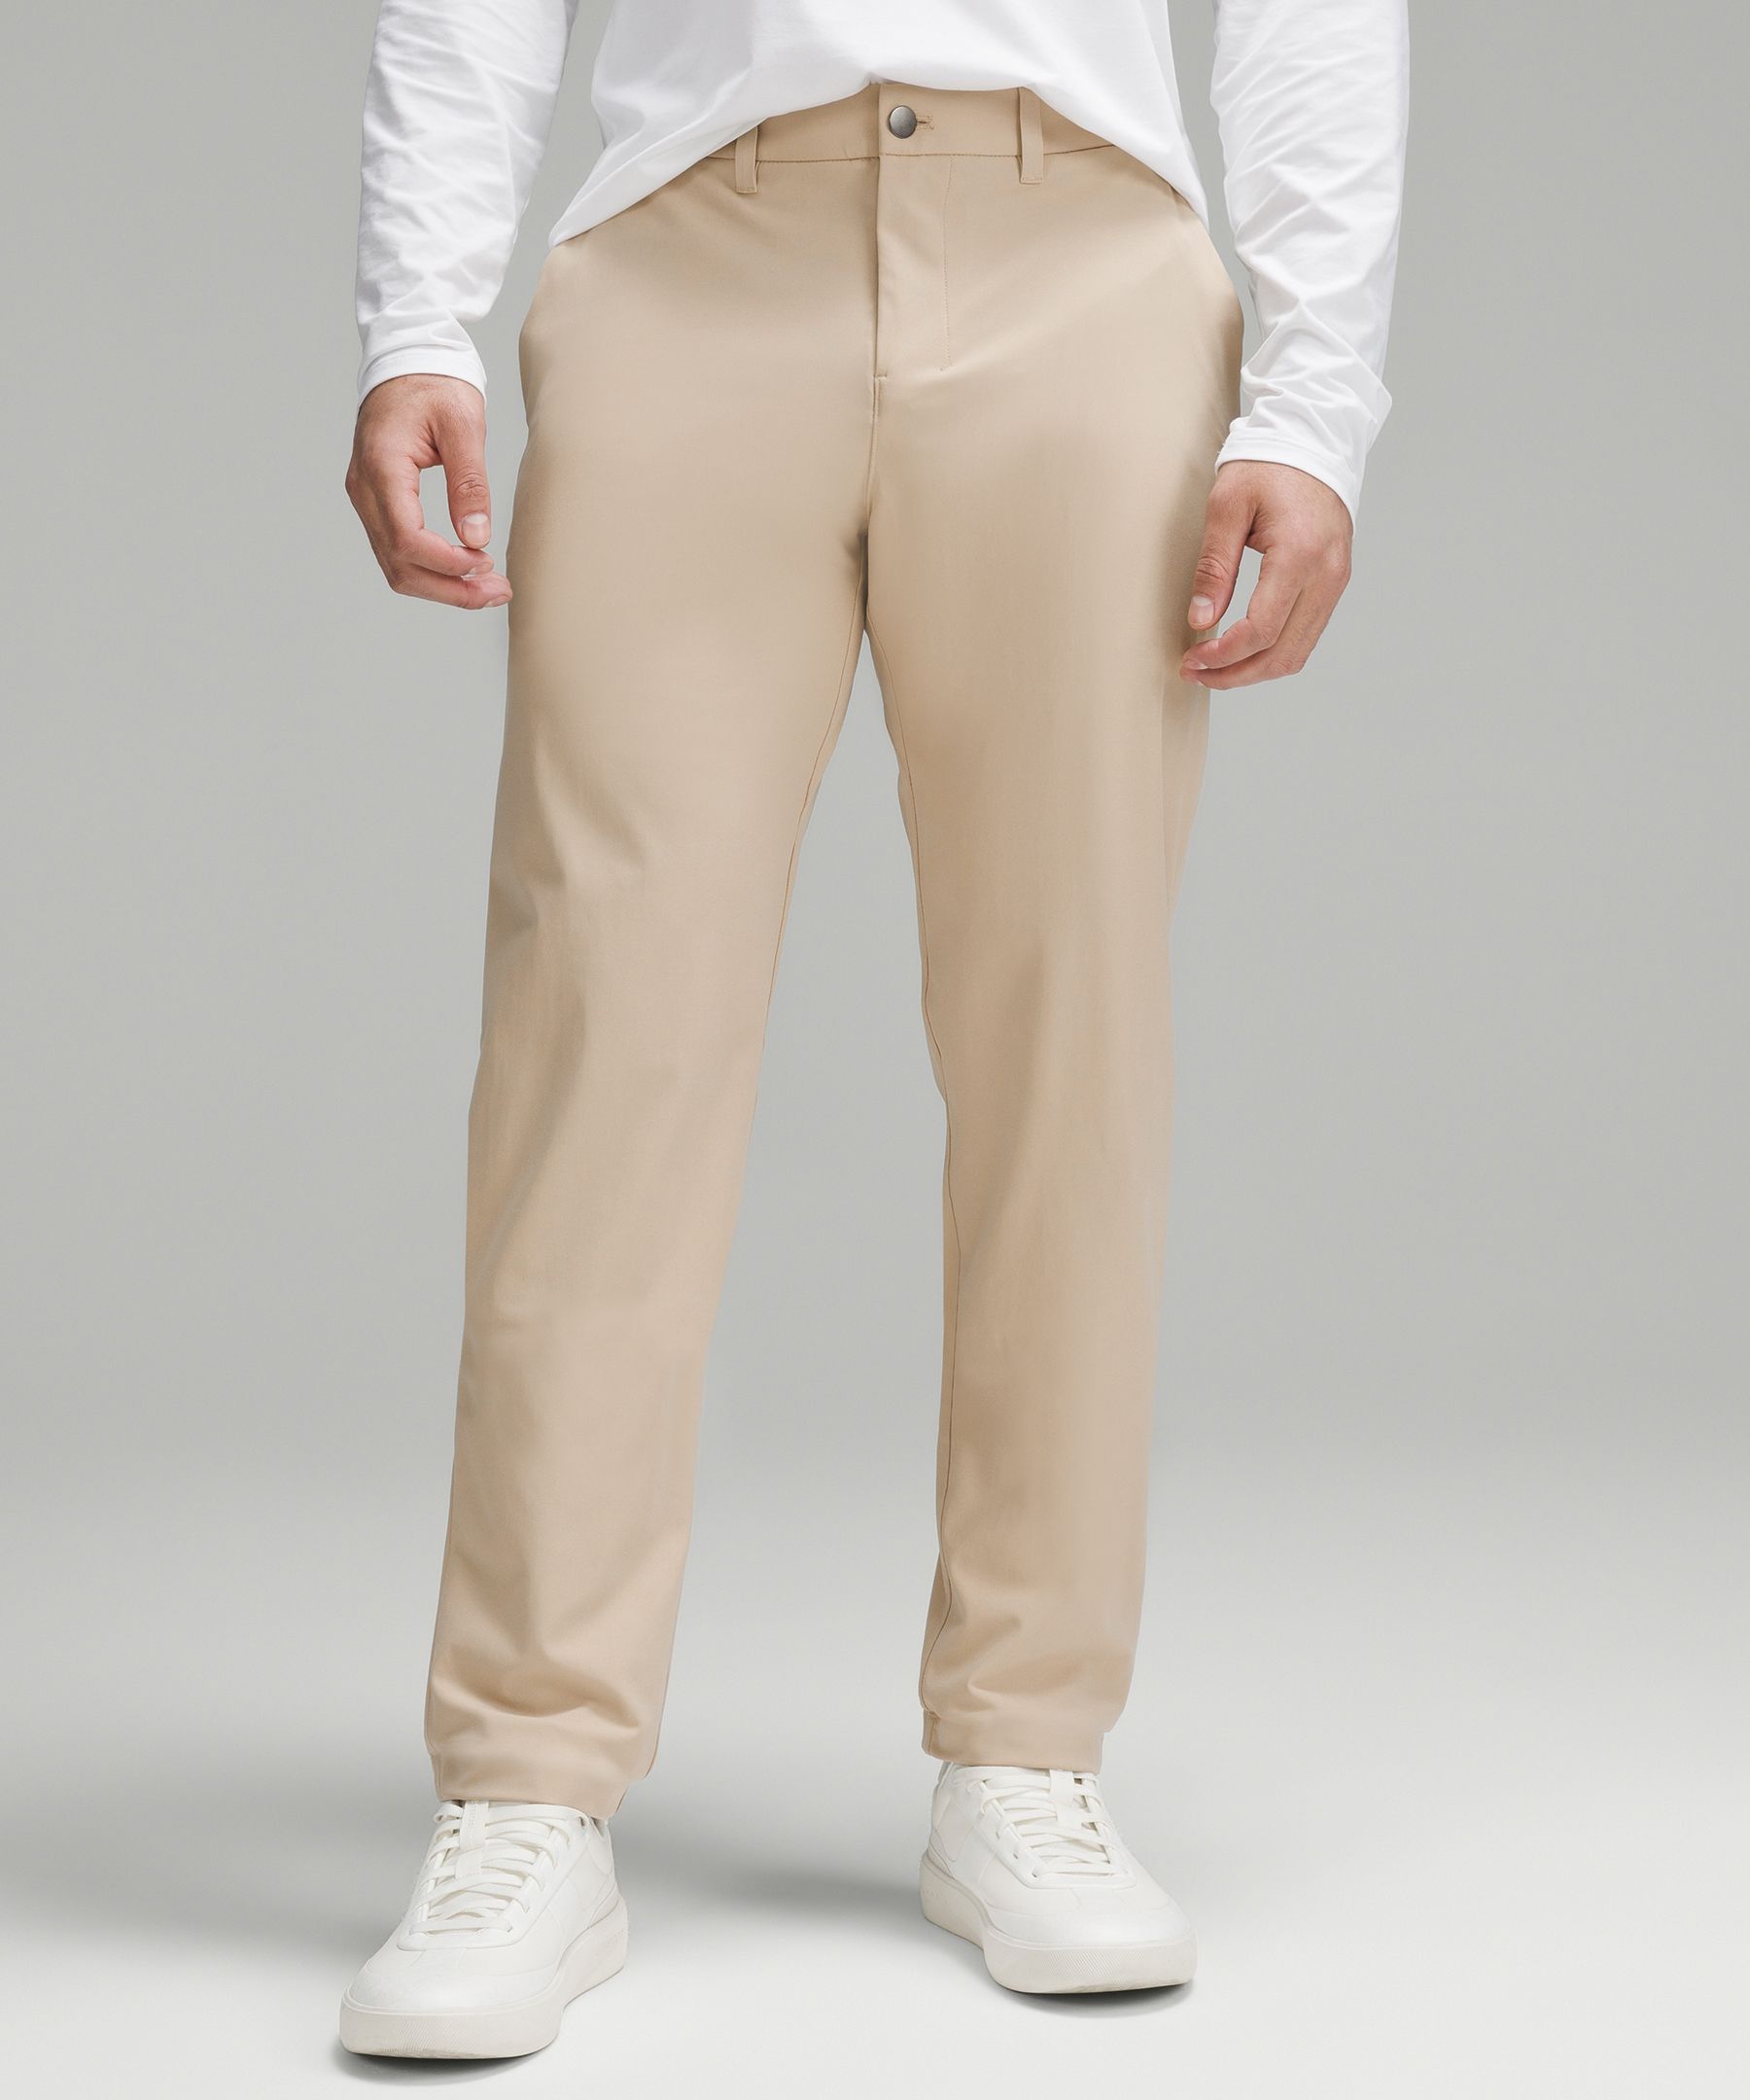 Lululemon Abc Classic-fit Trousers 34"l Warpstreme